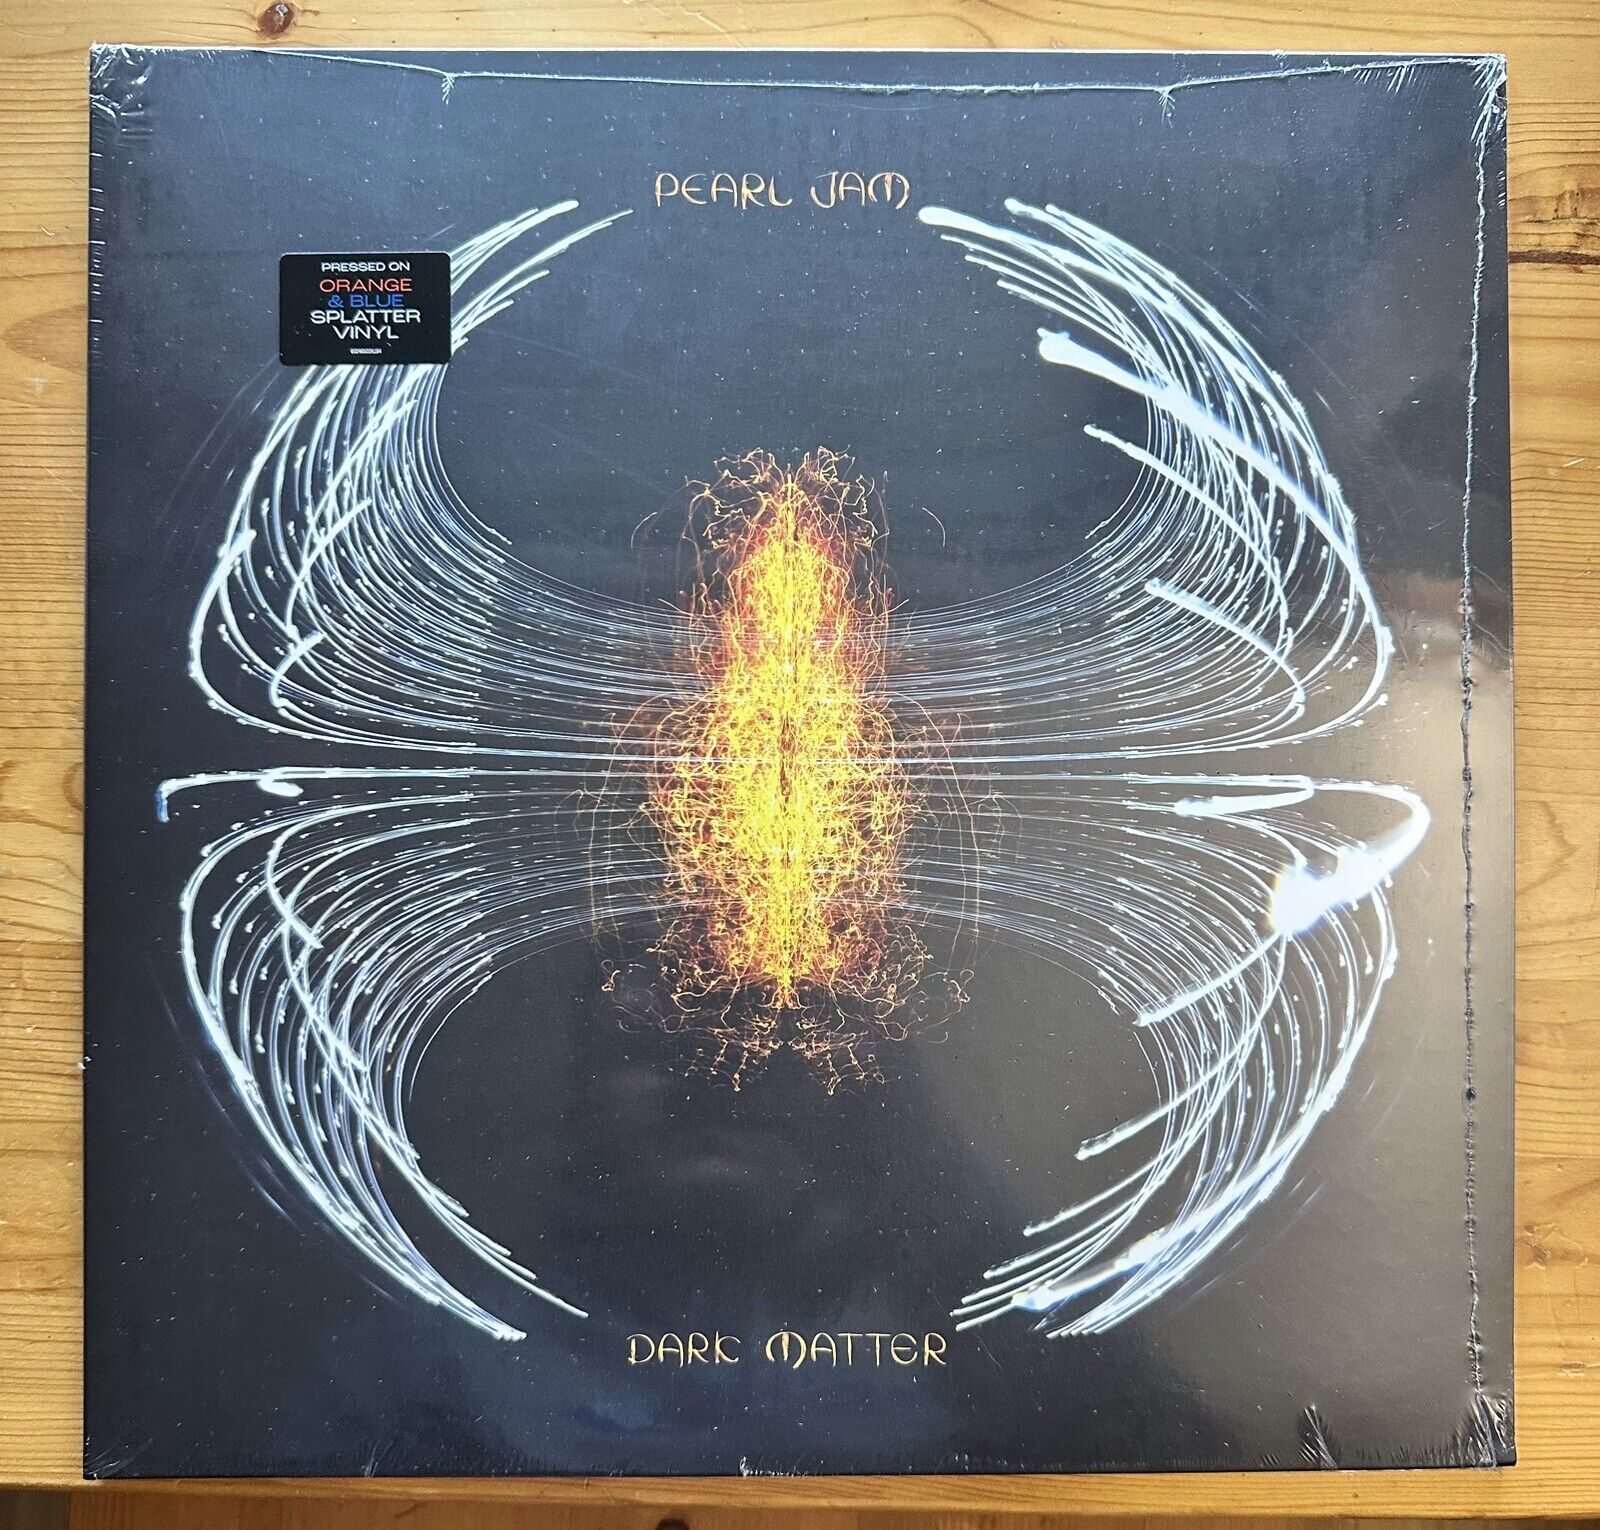 Pearl Jam Dark Matter Vinyl LP - RSD - NEW YORK - Orange/Blue Splatter Variant